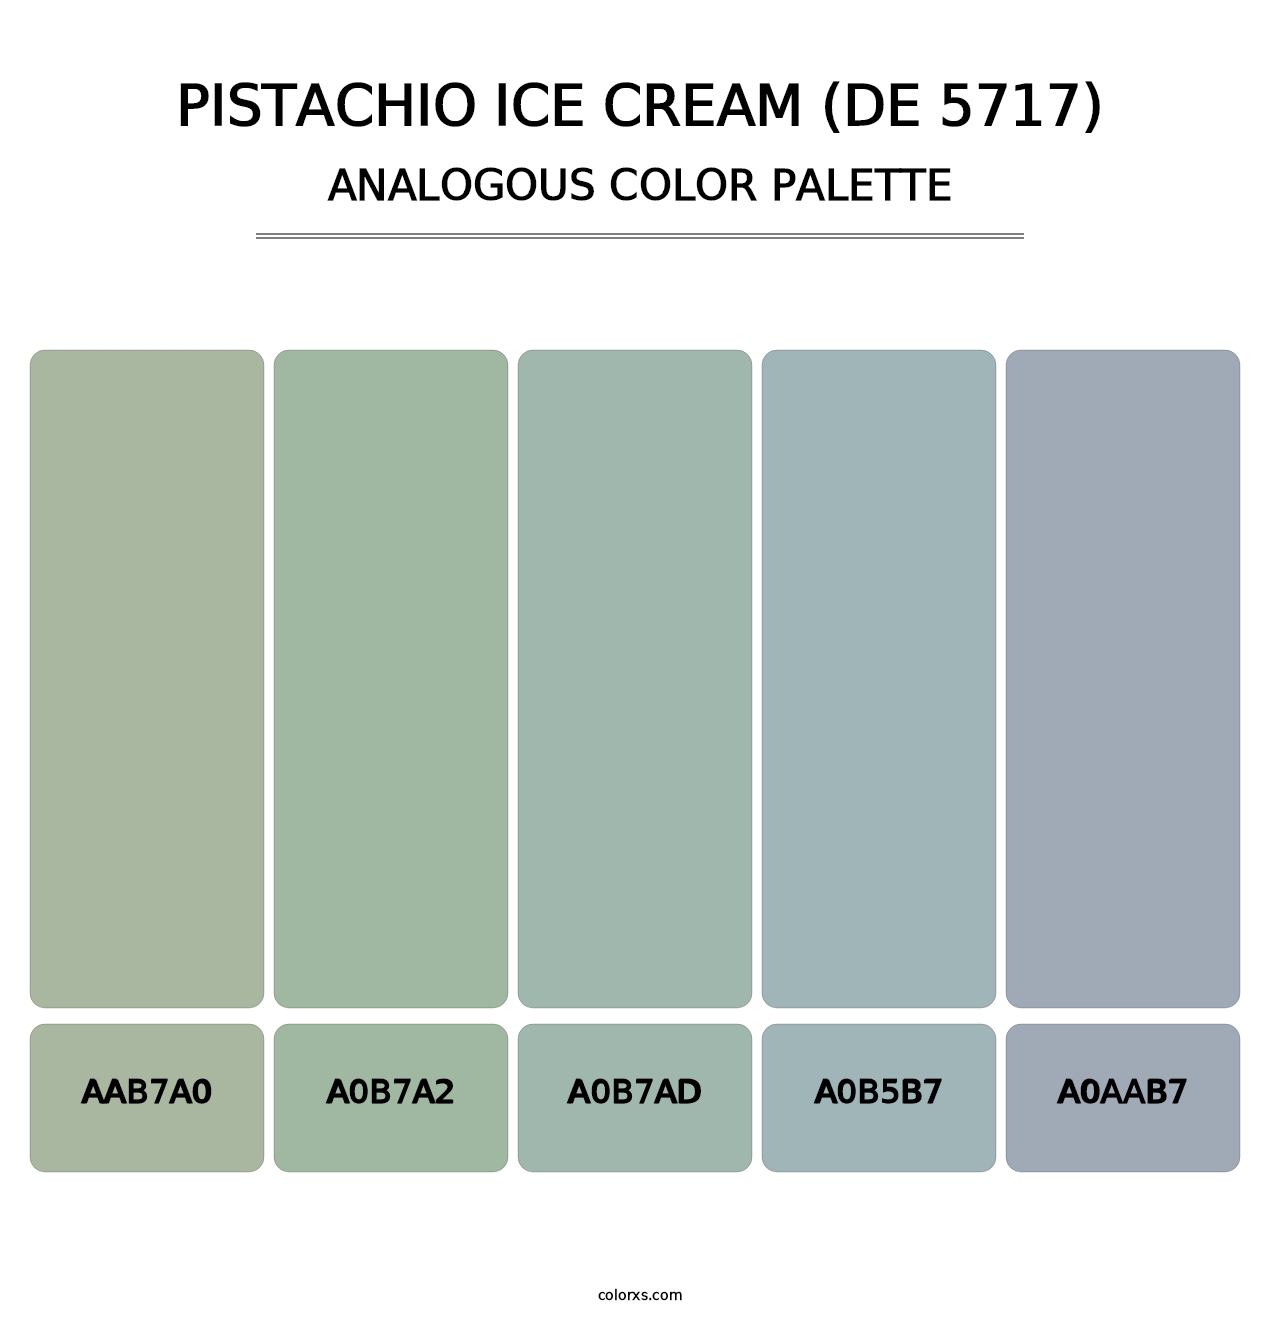 Pistachio Ice Cream (DE 5717) - Analogous Color Palette